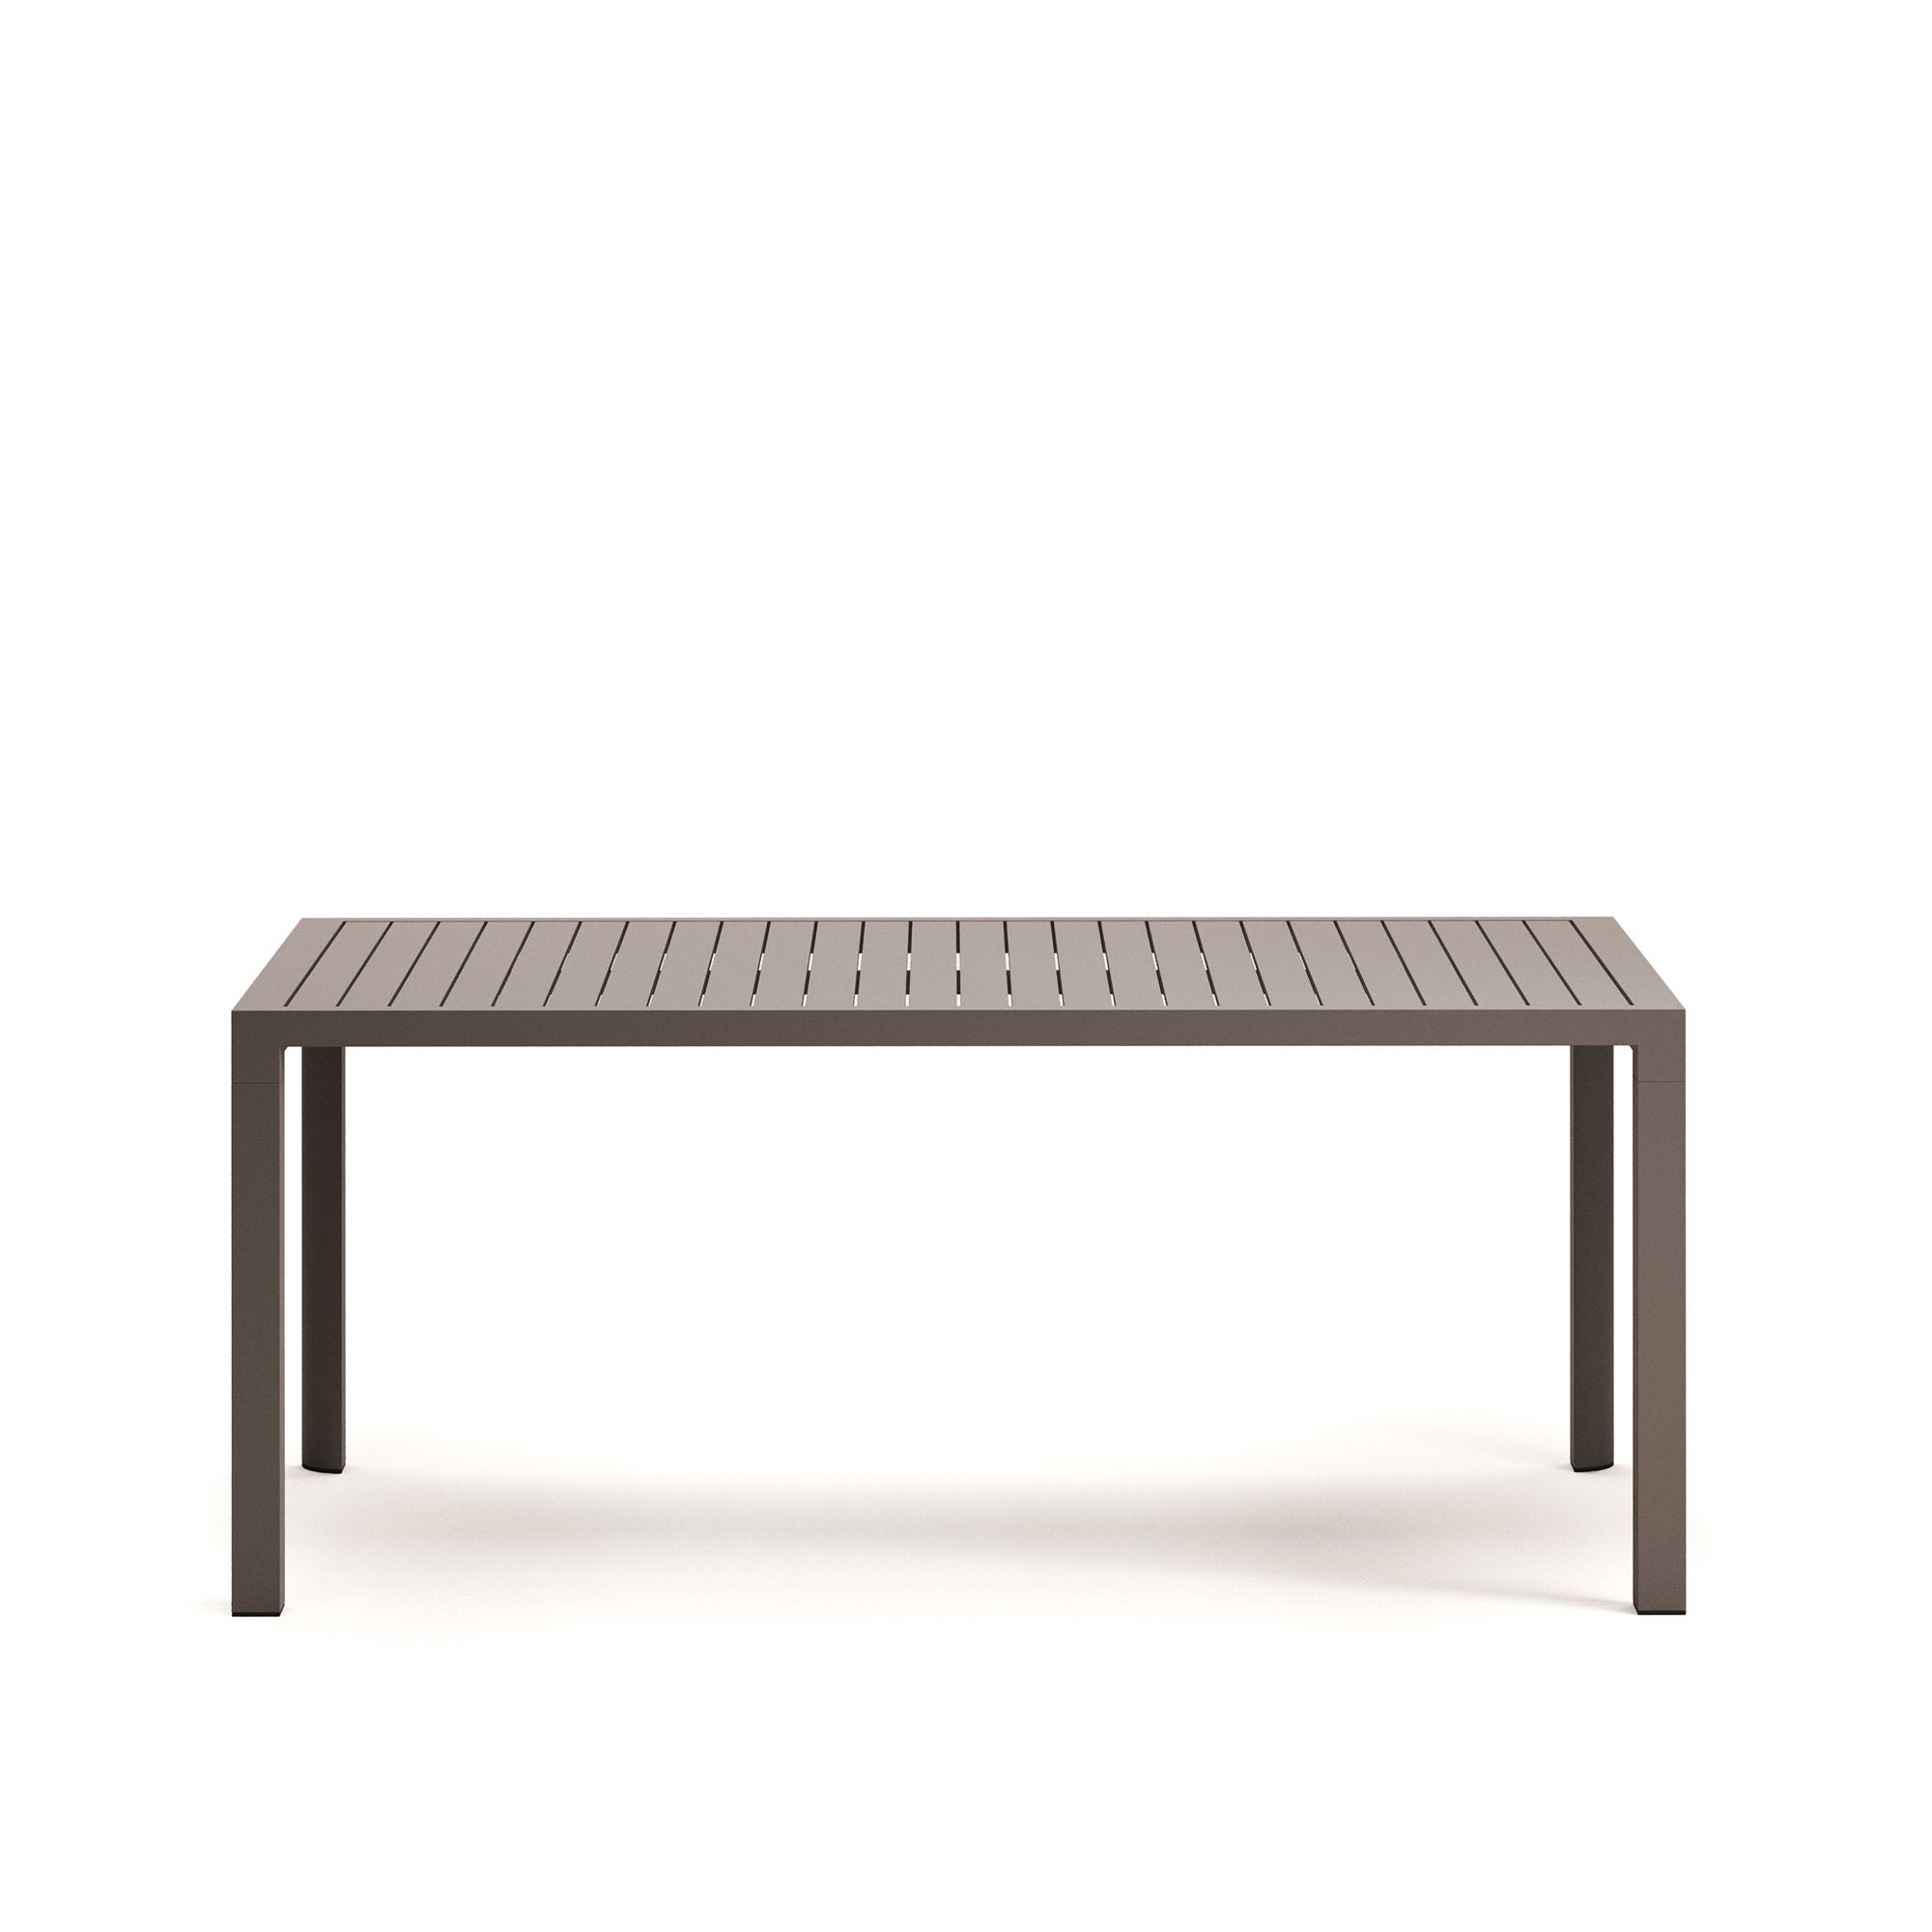 Culip alumínium kültéri asztal, 180 x 90 cm, barna színű porszórt bevonattal